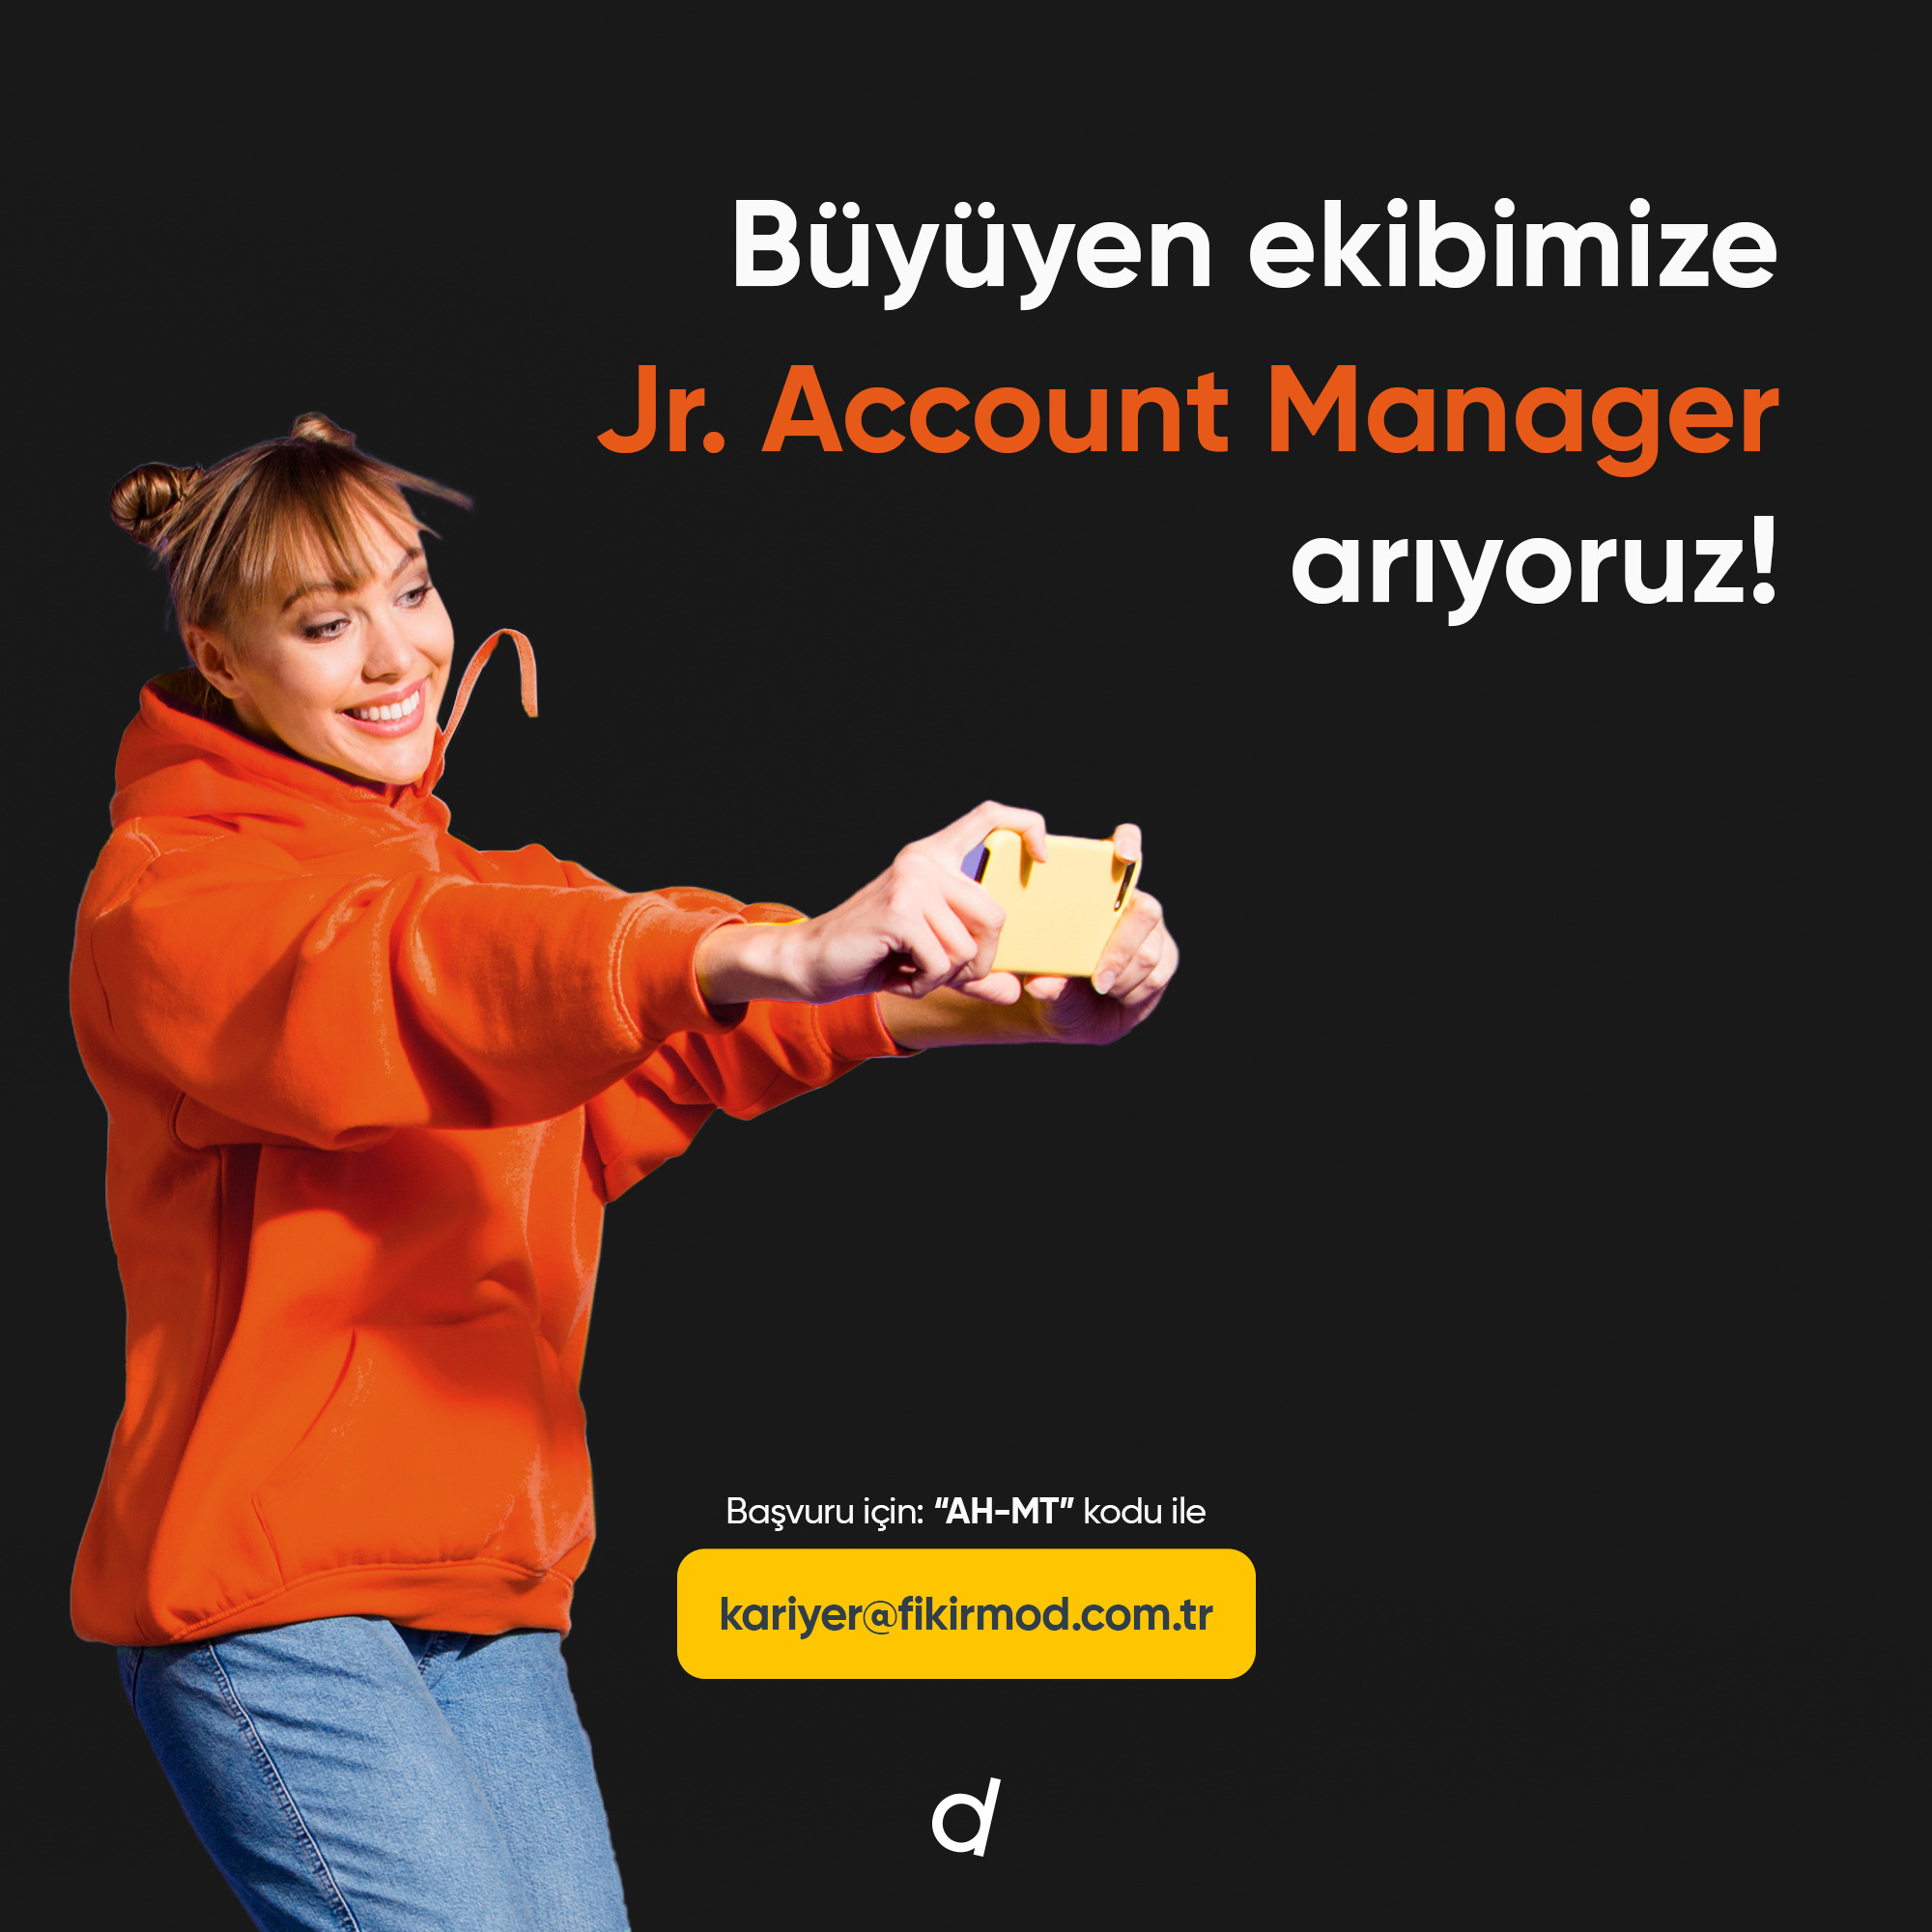 <strong>Büyüyen ekibimize “Jr. Account Manager” arıyoruz!</strong>